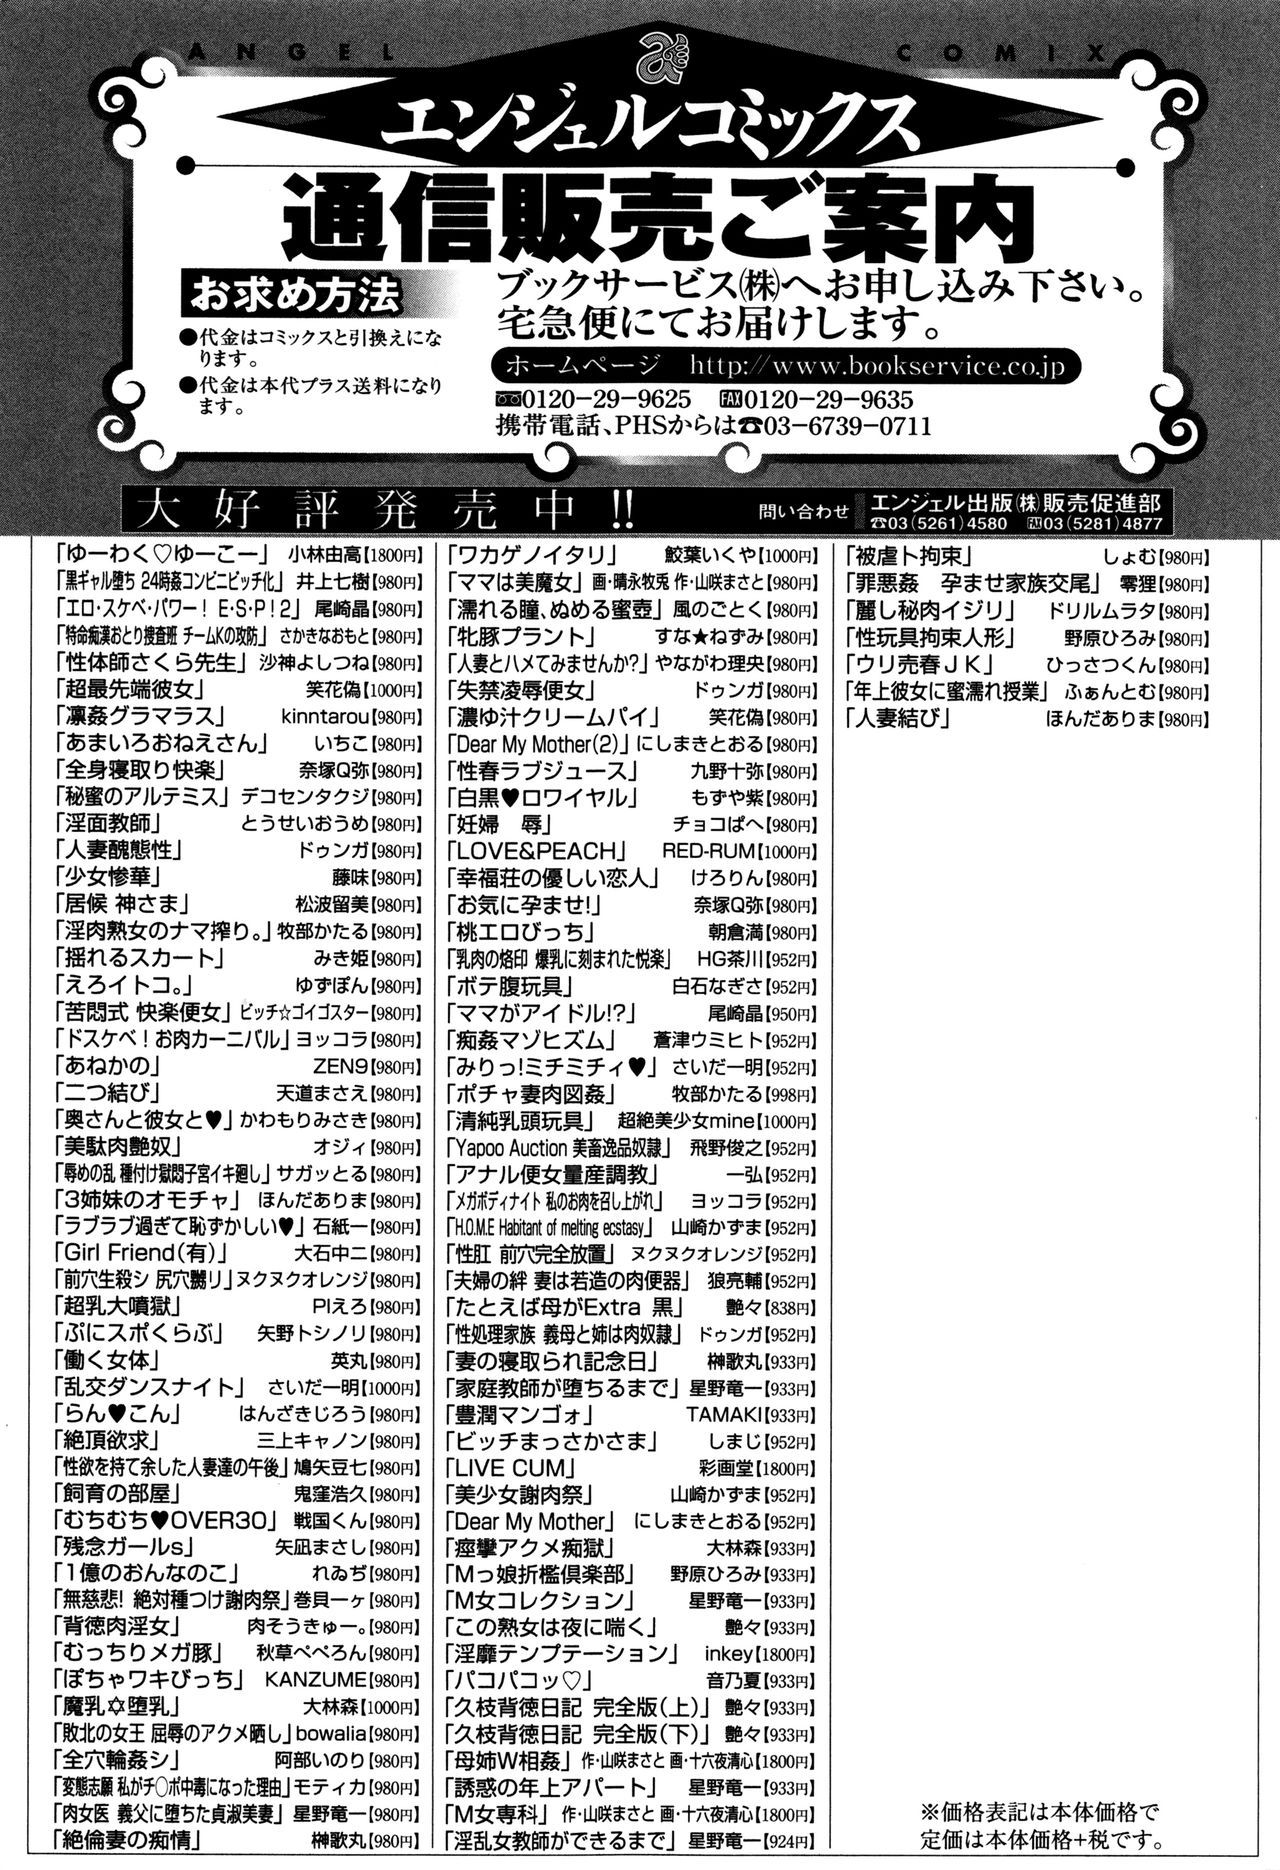 黒ガル落〜24分館コンビニビッチか〜-ブラックGAL IMMORAL24Hコンビニビッチ!!